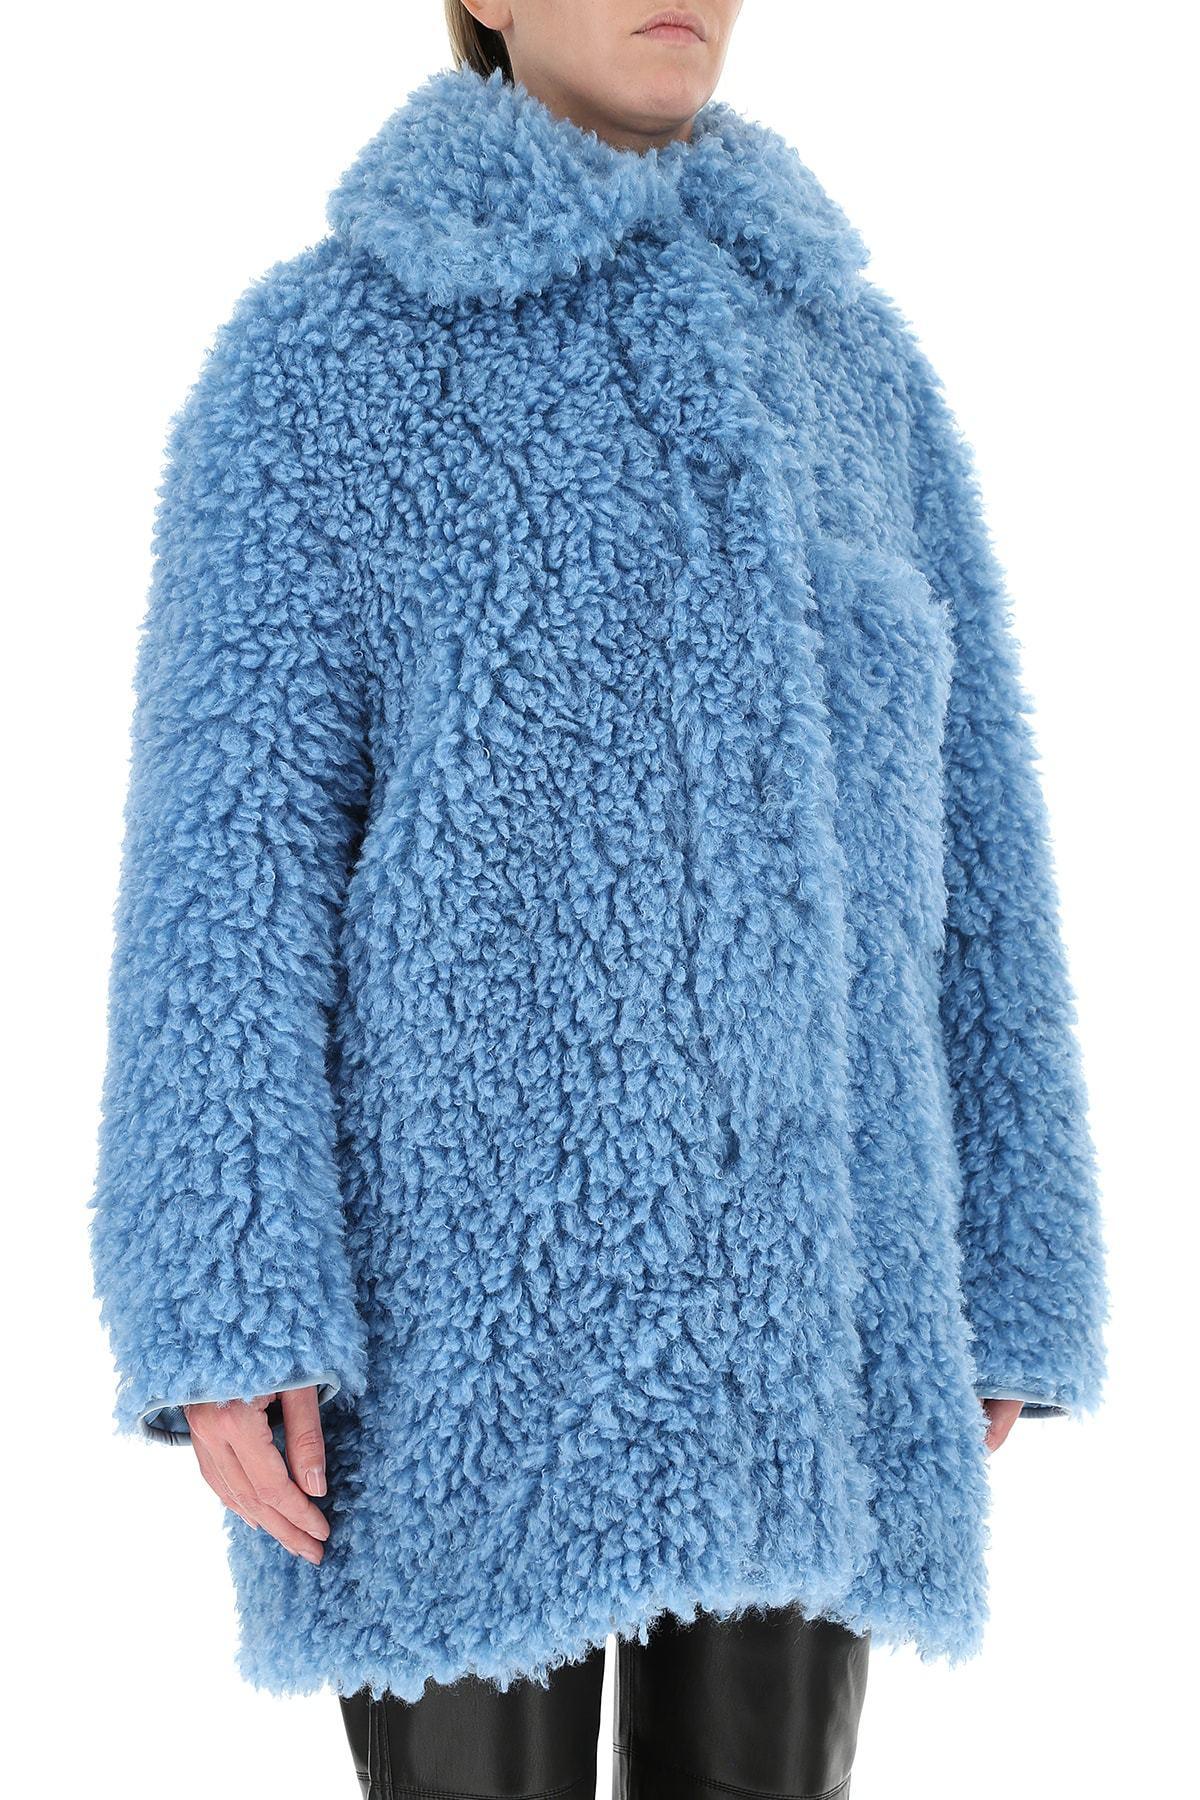 Stella McCartney Faux Fur Josephine Coat in Blue | Lyst